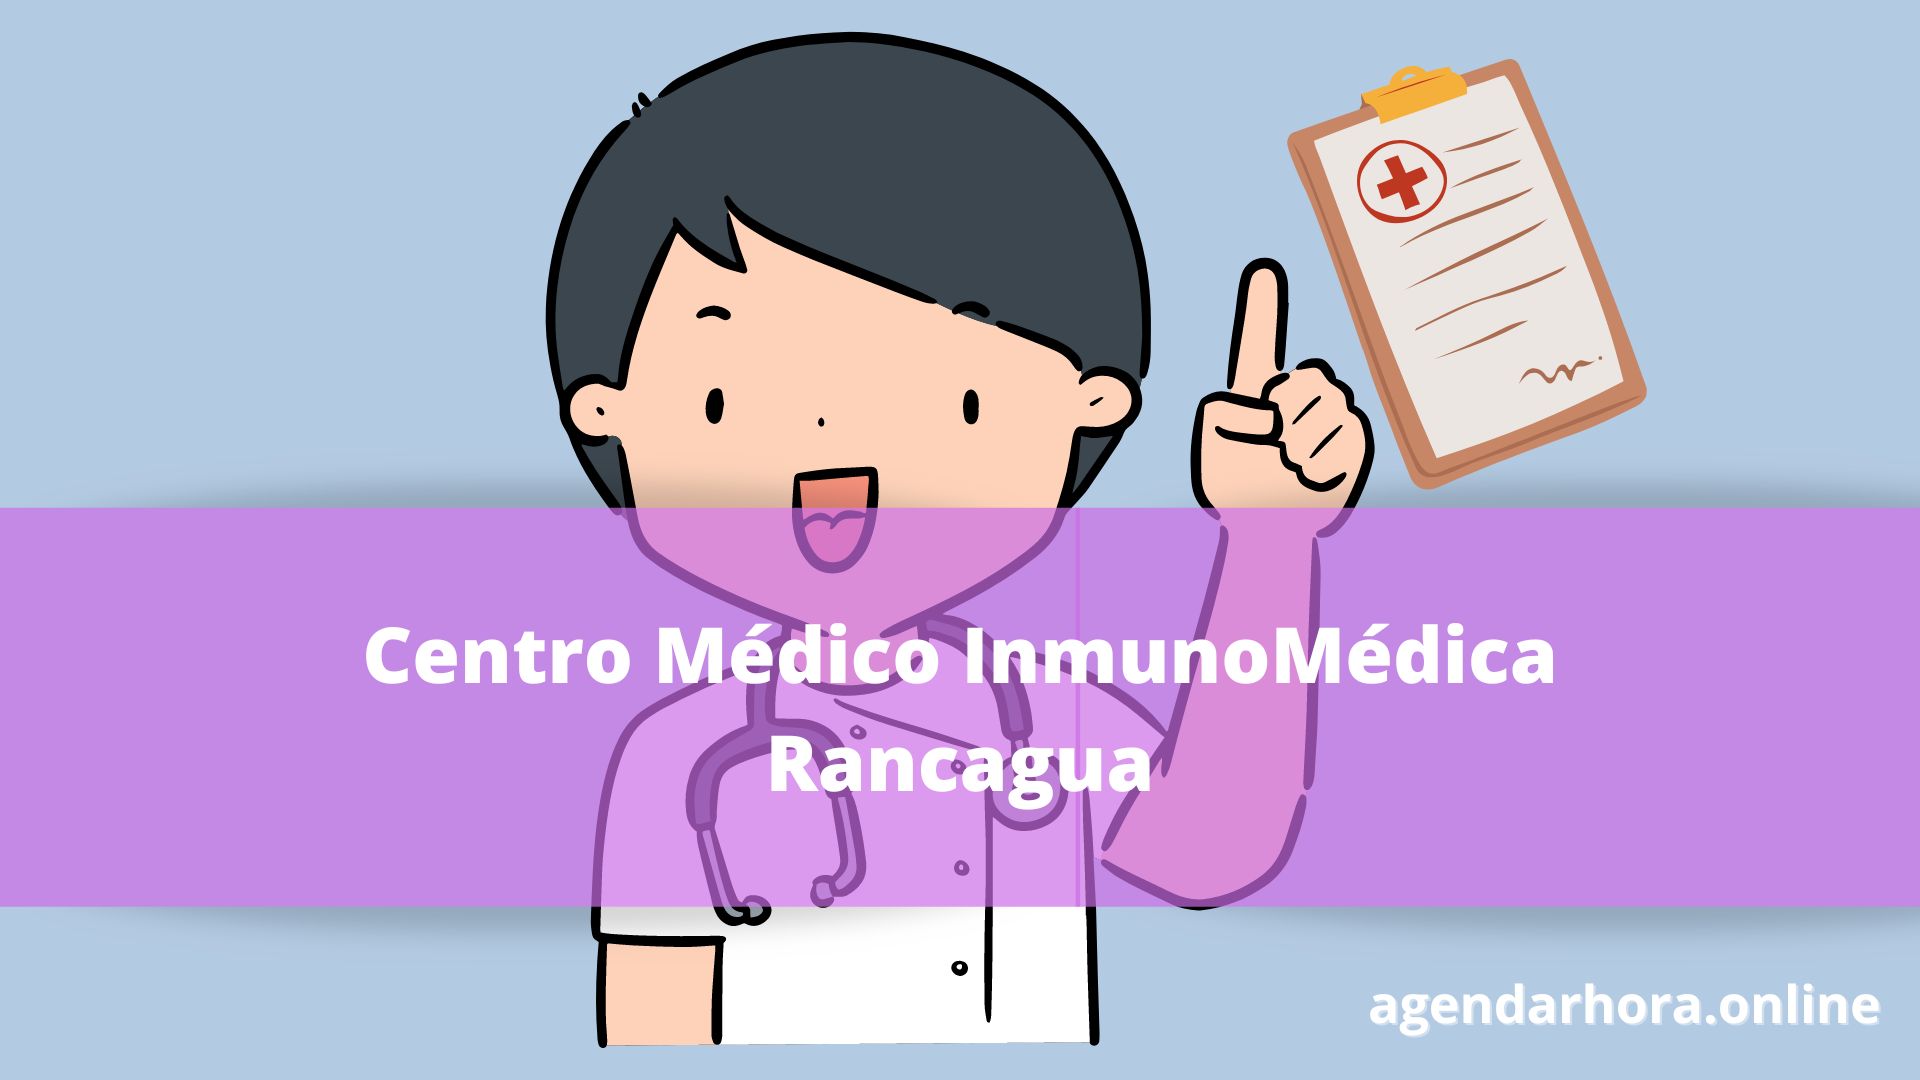 Centro Médico InmunoMédica Rancagua